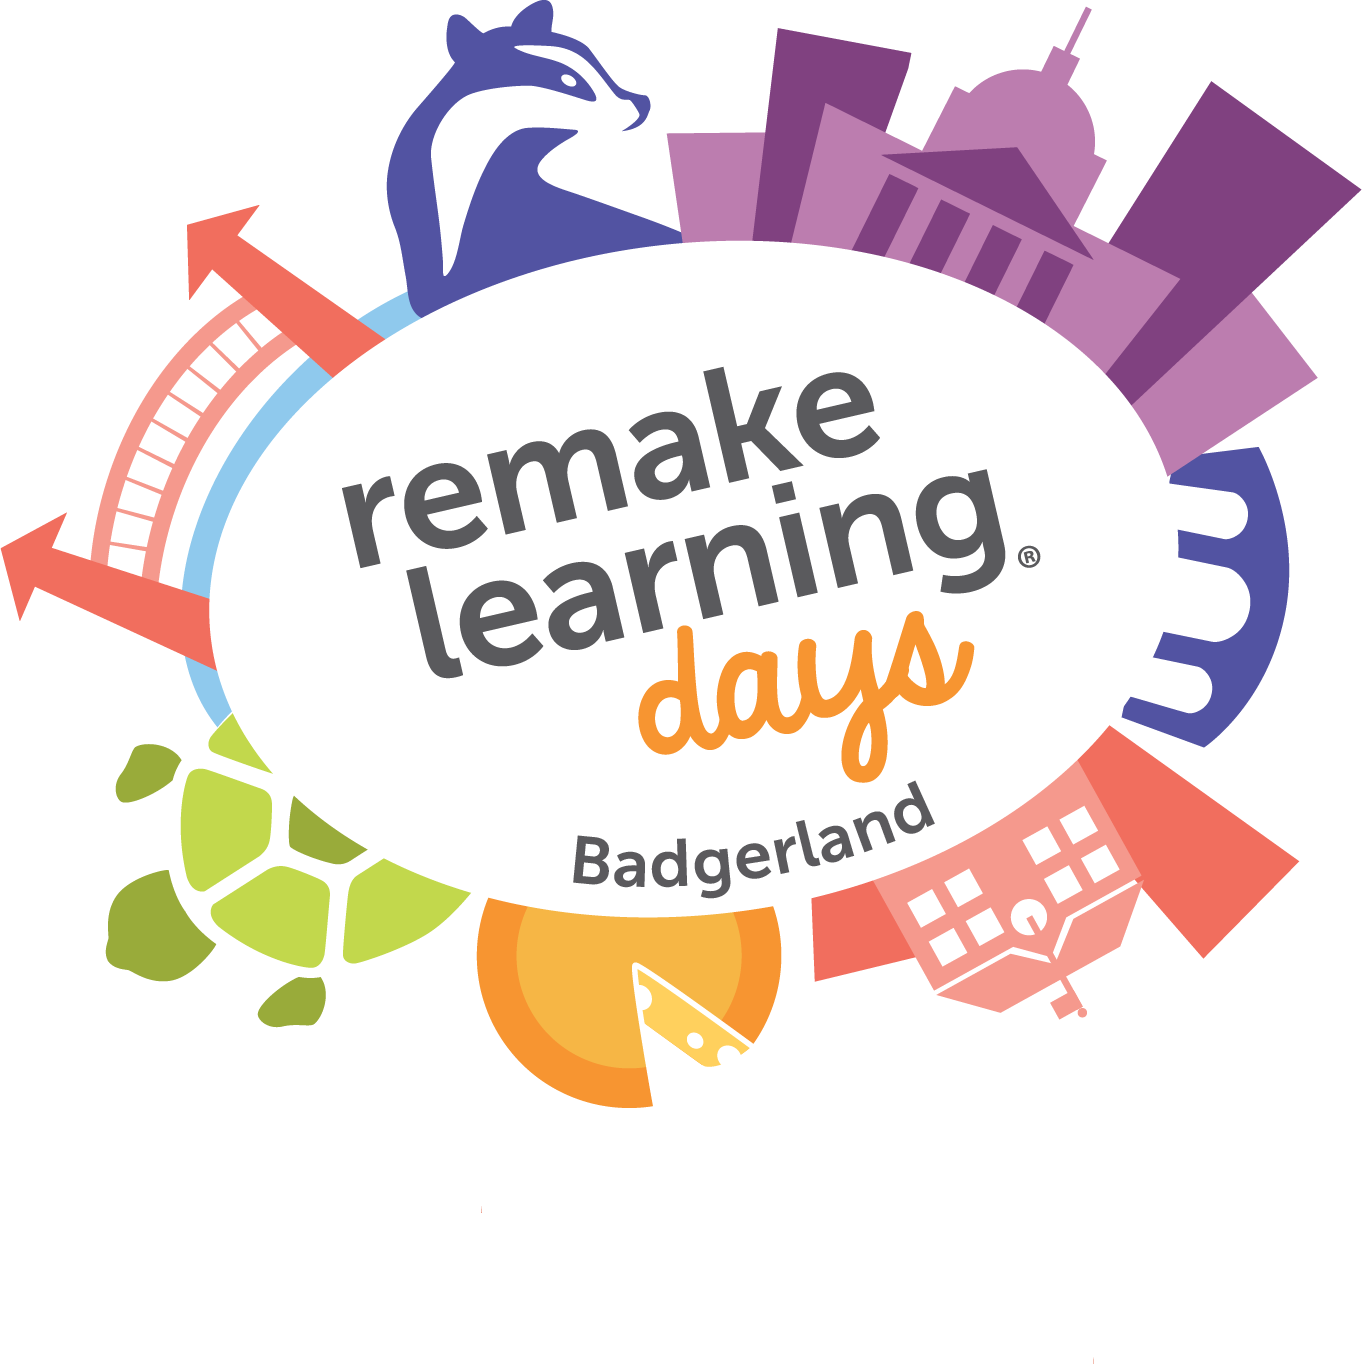 Remake Learning Days - Badgerland